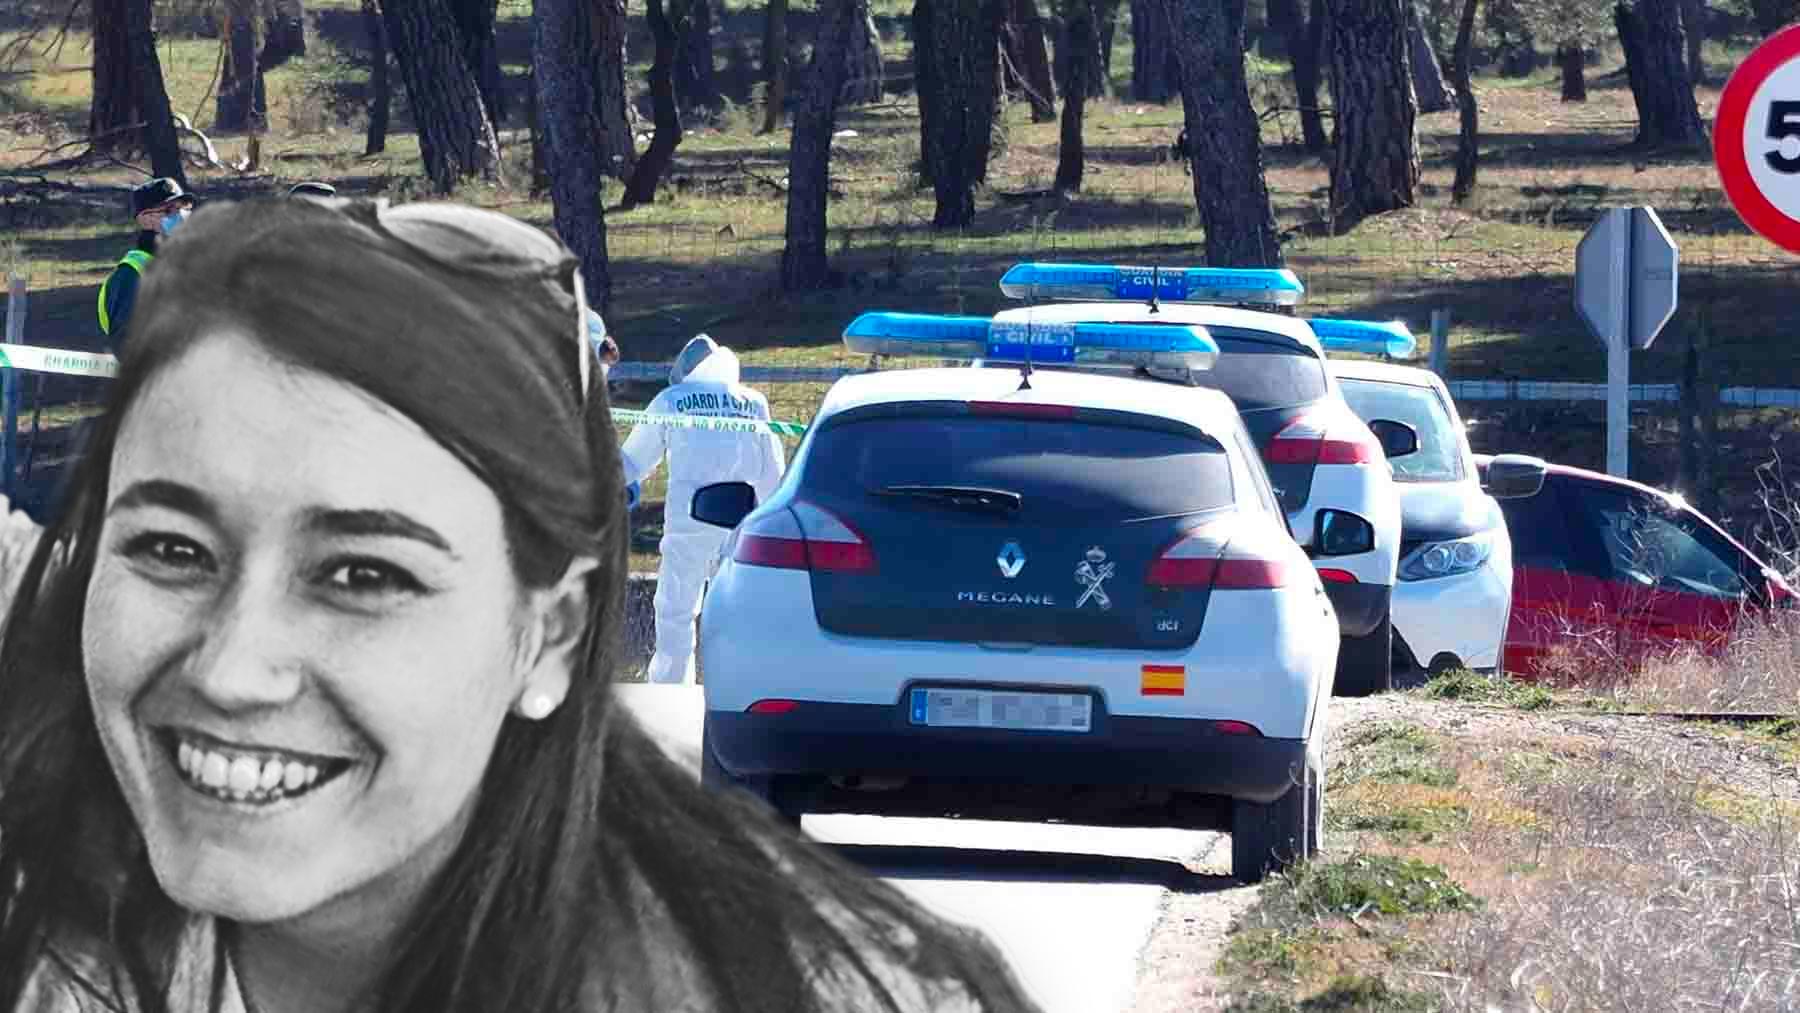 La Guardia Civil investiga los detalles del accidente que el último hombre que estuvo con Esther sufrió justo donde se encontró el cadáver de la joven.